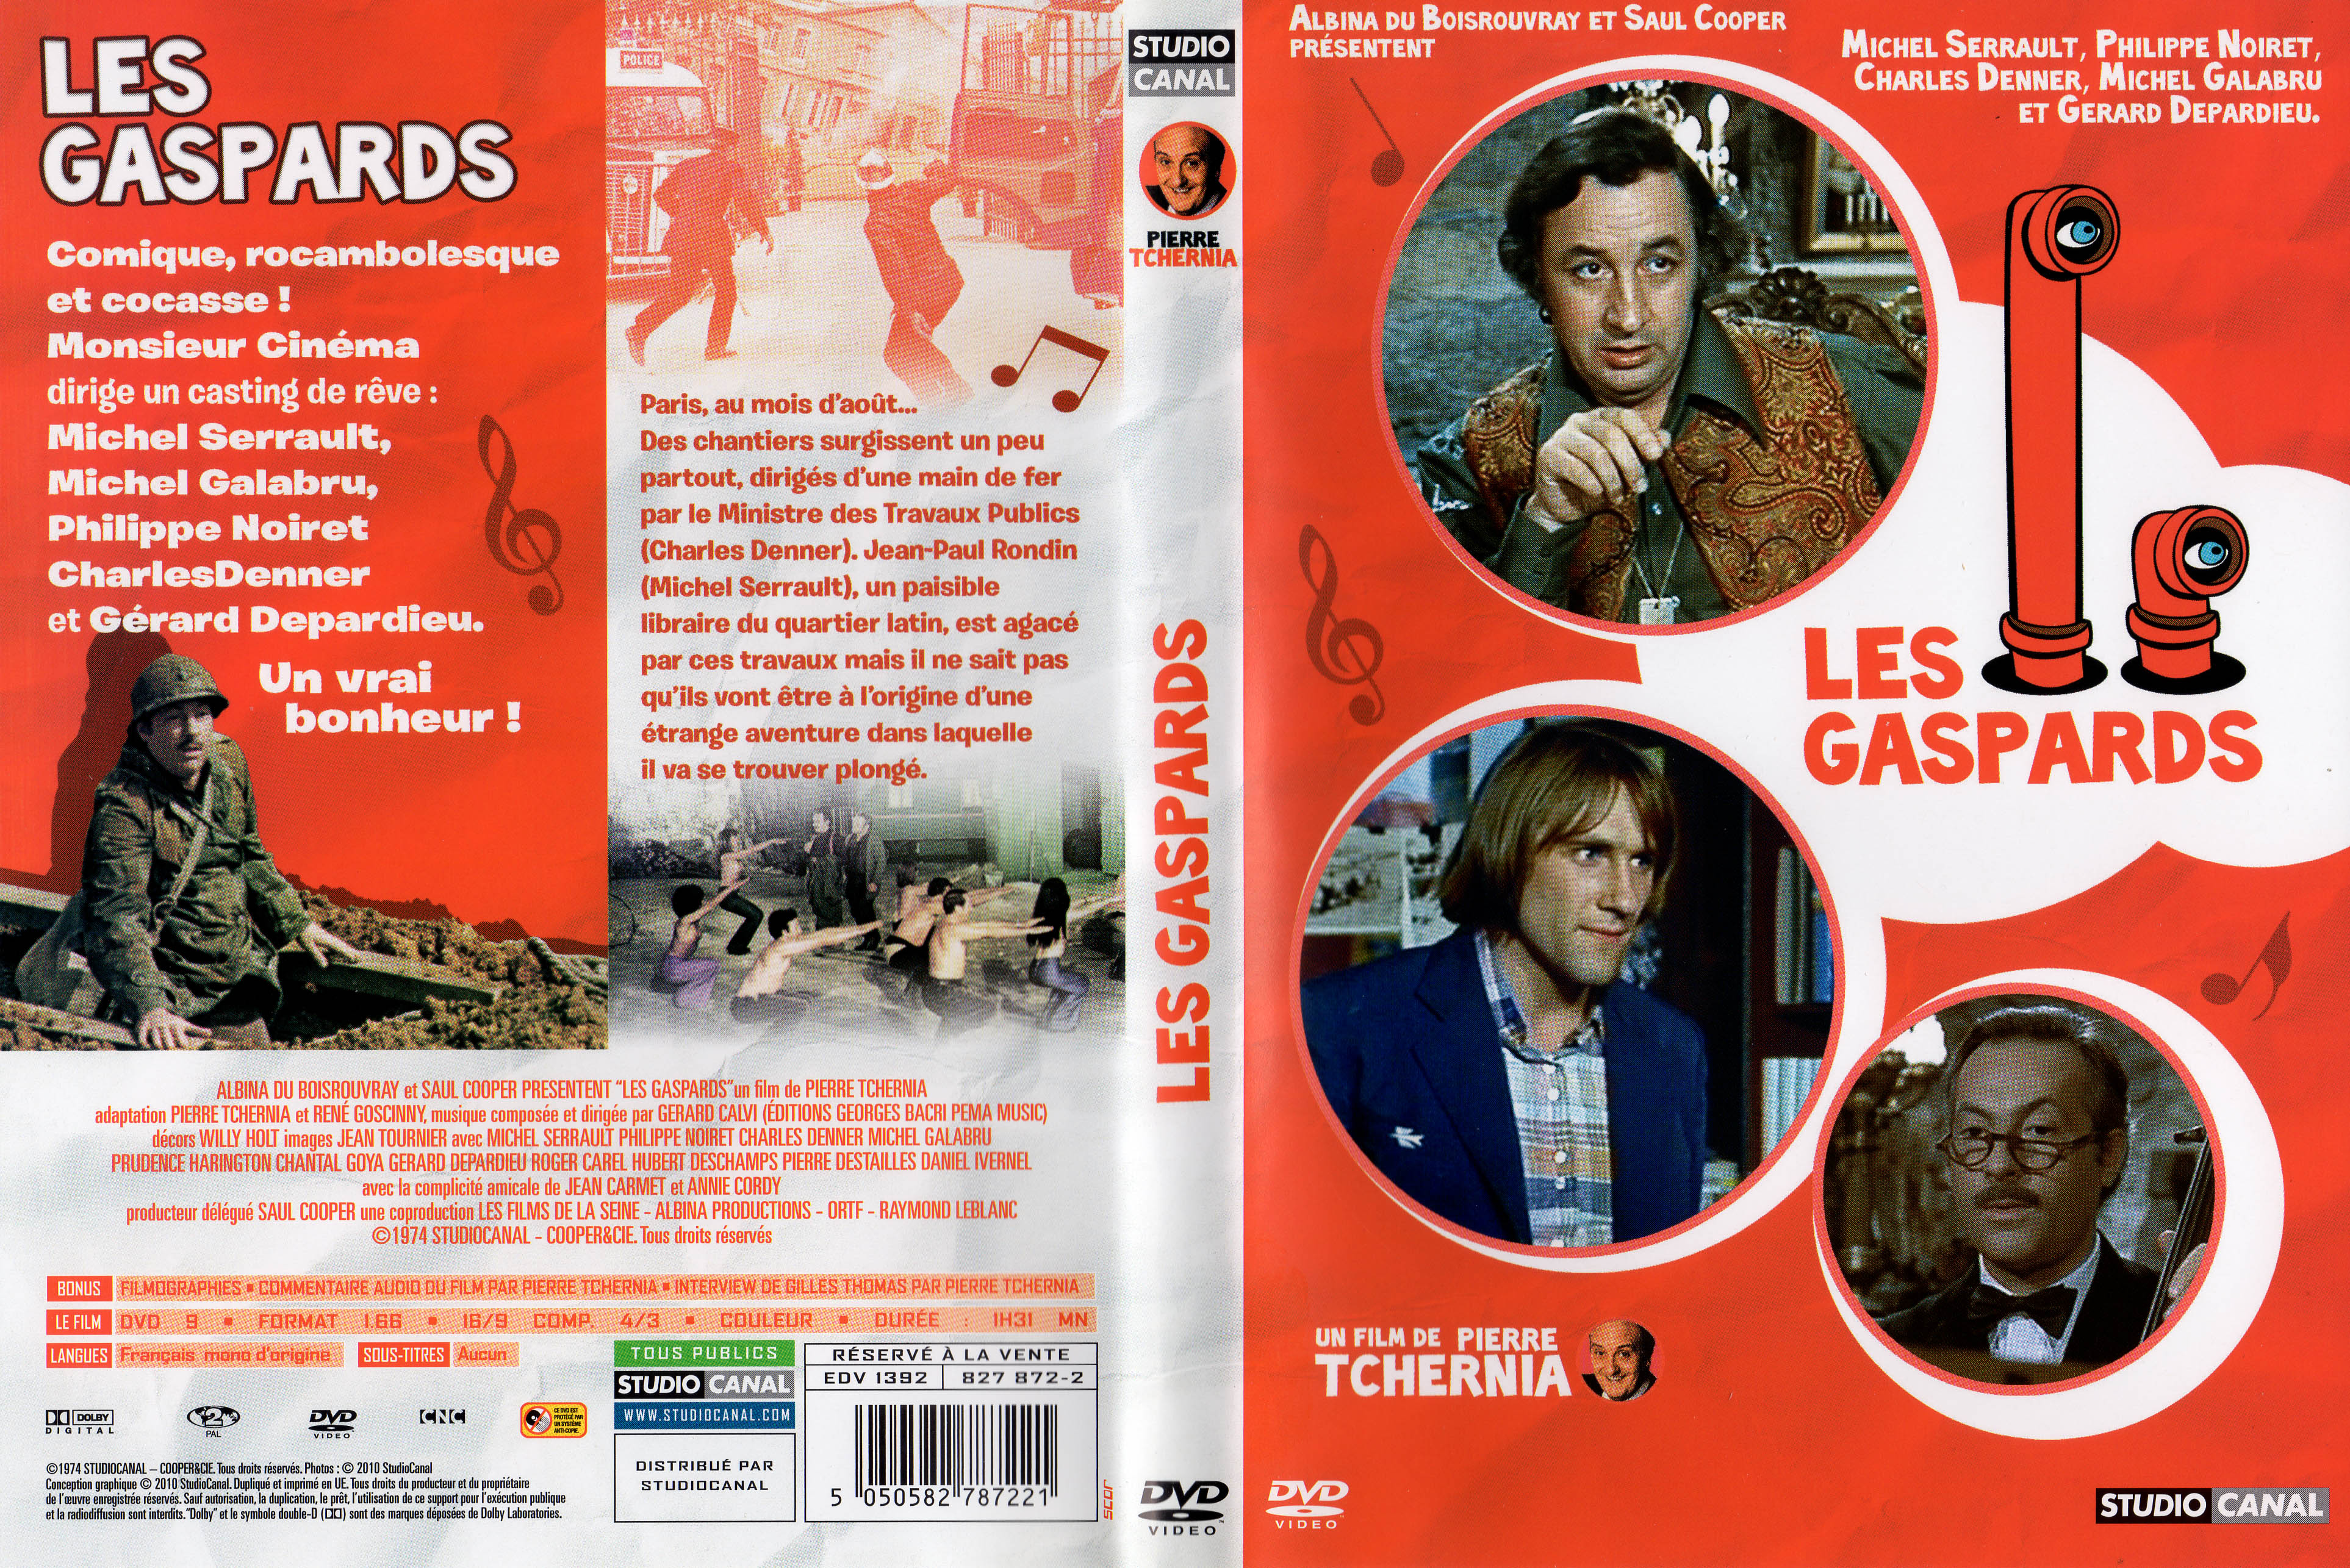 Jaquette DVD Les gaspards